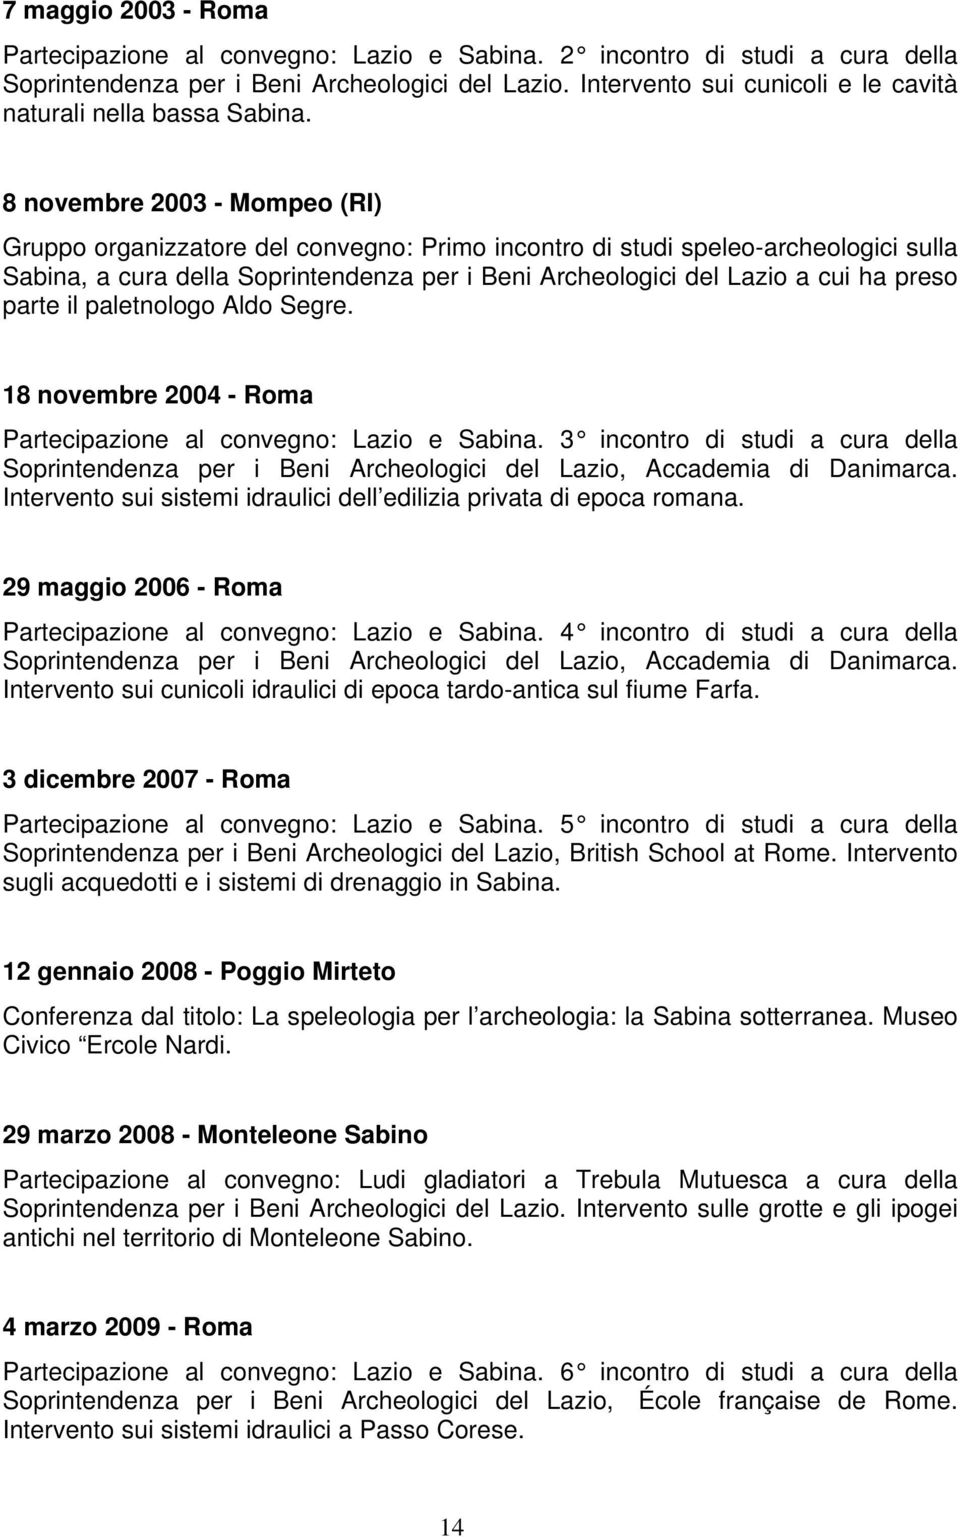 8 novembre 2003 - Mompeo (RI) Gruppo organizzatore del convegno: Primo incontro di studi speleo-archeologici sulla Sabina, a cura della Soprintendenza per i Beni Archeologici del Lazio a cui ha preso